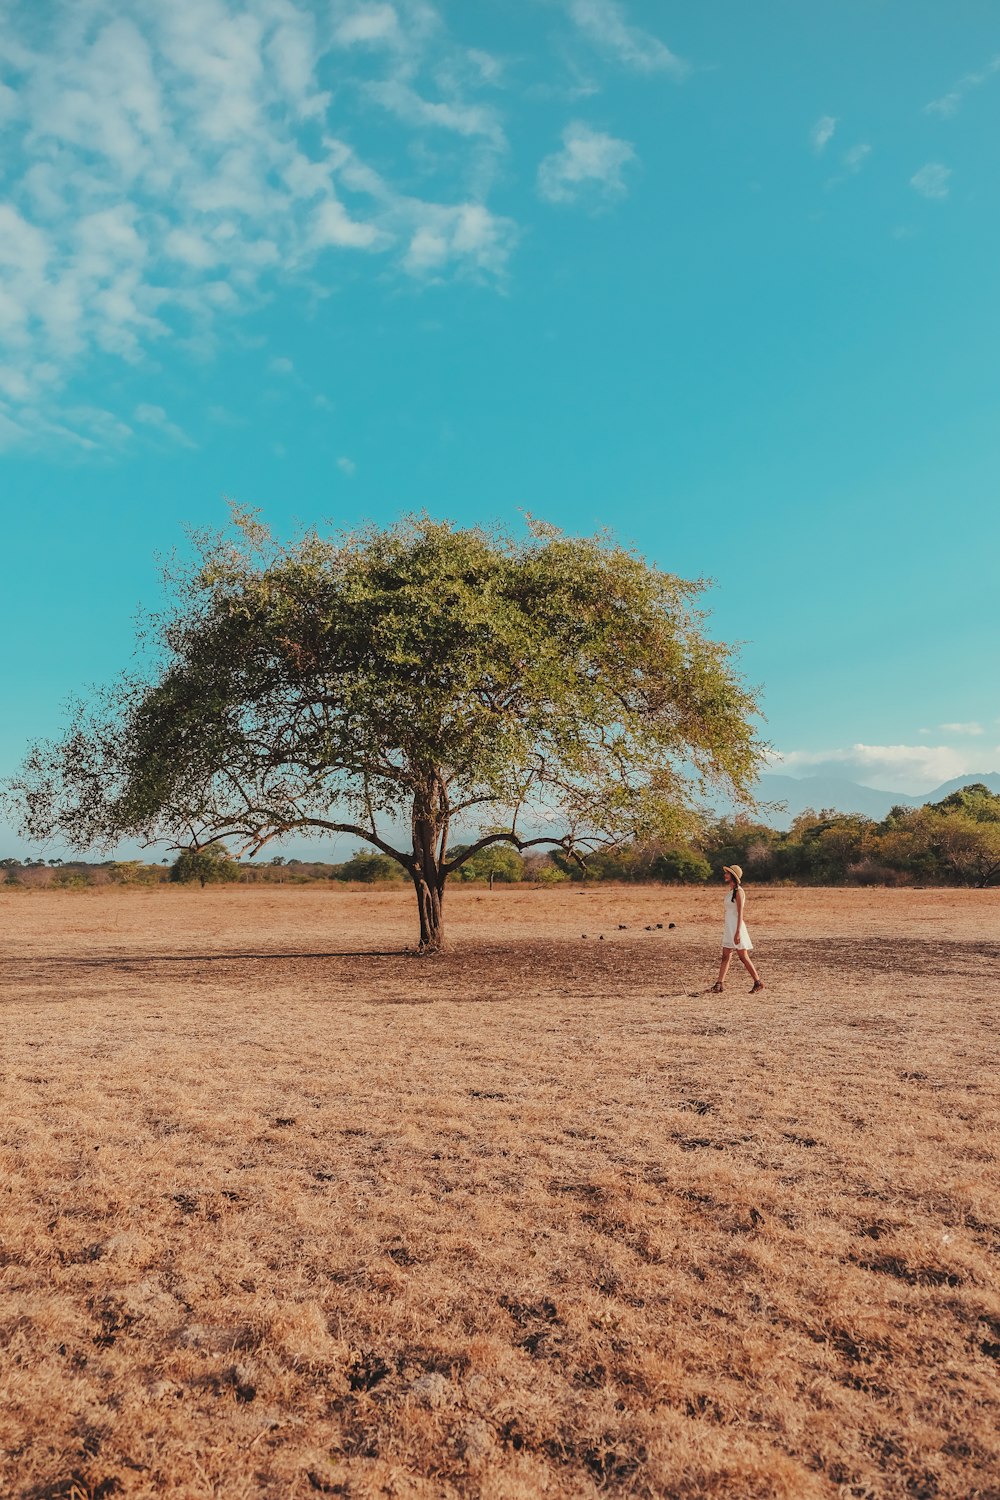 a person walking in a field near a tree